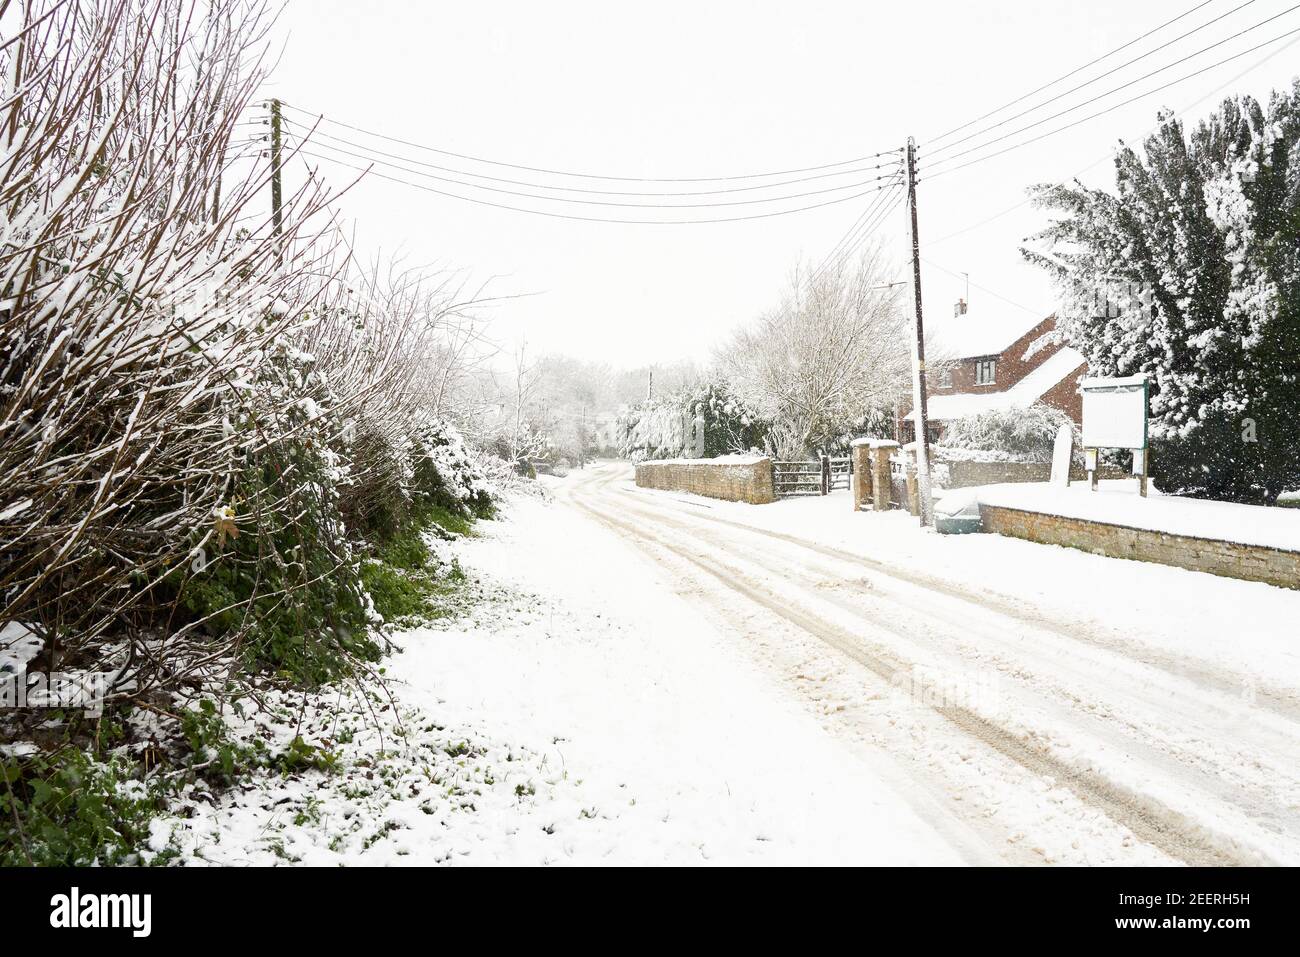 La carretera secundaria cubierta por hielo crea peligrosas condiciones de conducción durante una tormenta de nieve en invierno. Church Lane, Welby, Lincolnshire Foto de stock